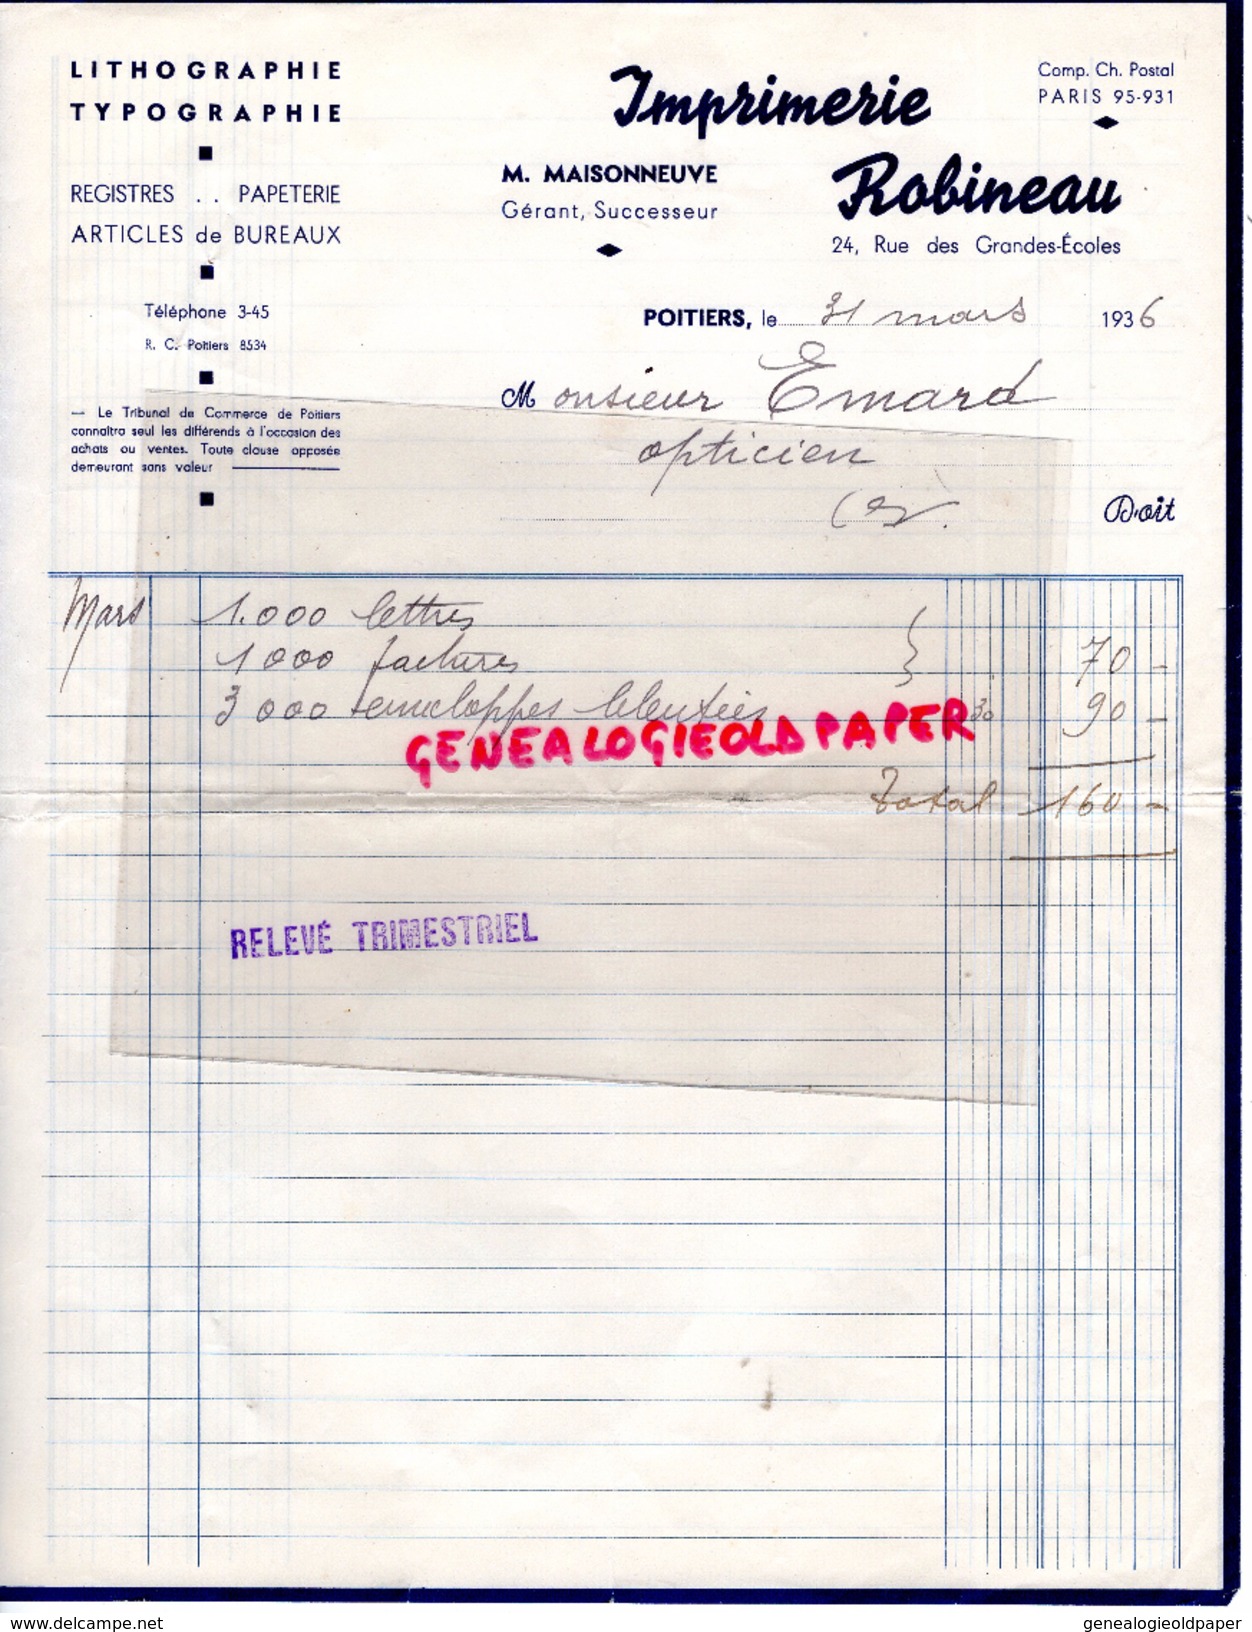 86 - POITIERS - FACTURE IMPRIMERIE ROBINEAU- M. MAISONNEUVE- 24 RUE GRANDES ECOLES- LITHOGRAPHIE TYPOGRAPHIE-1936 - Drukkerij & Papieren